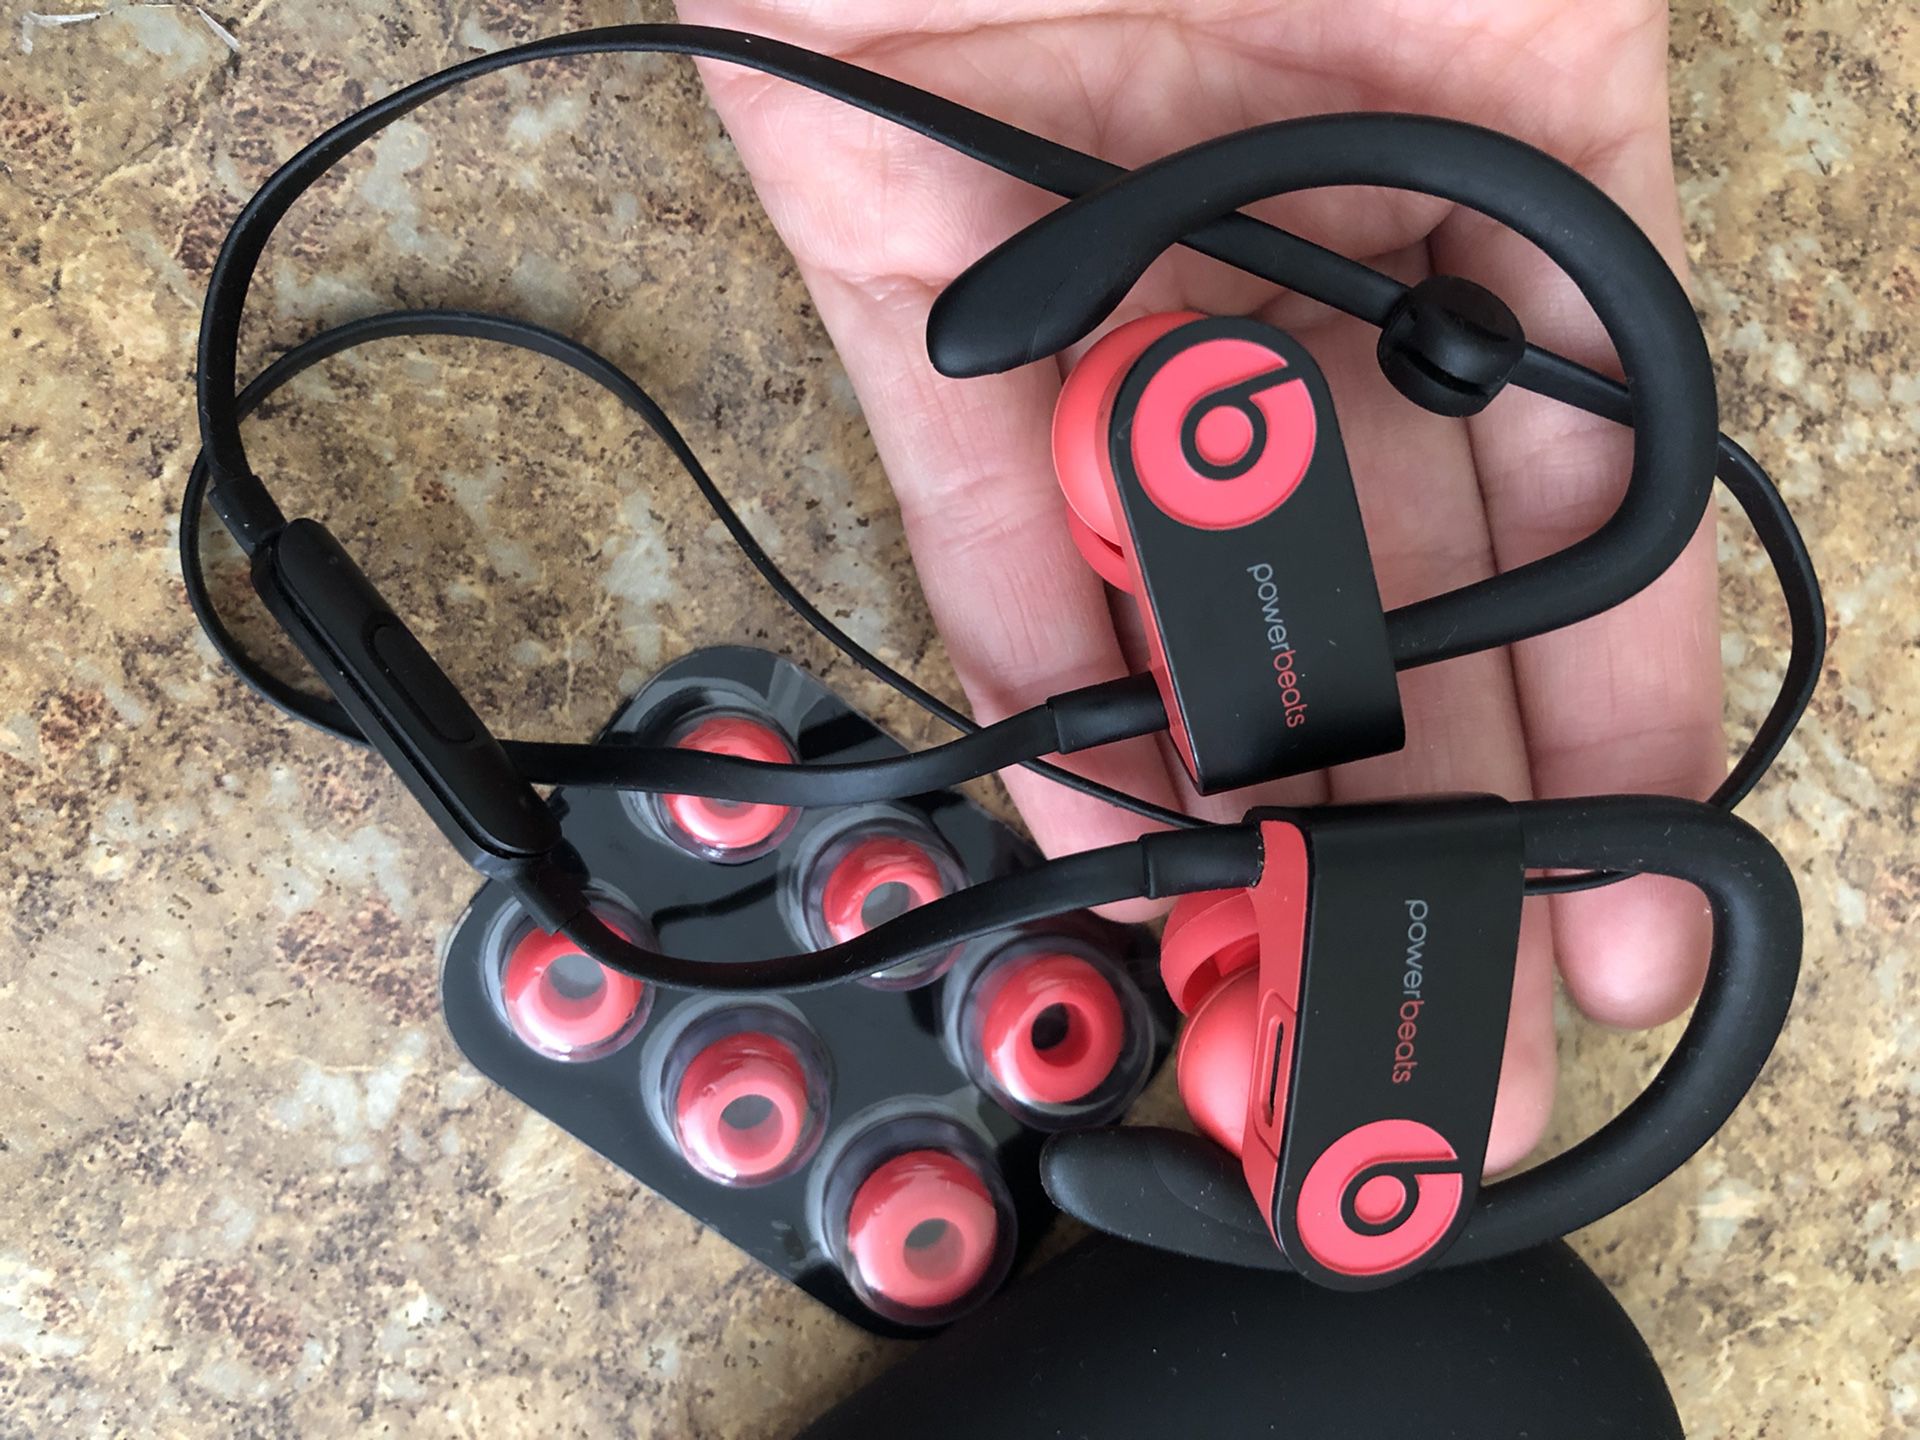 Powerbeats 3 wireless Bluetooth headphones in ear siren red works great